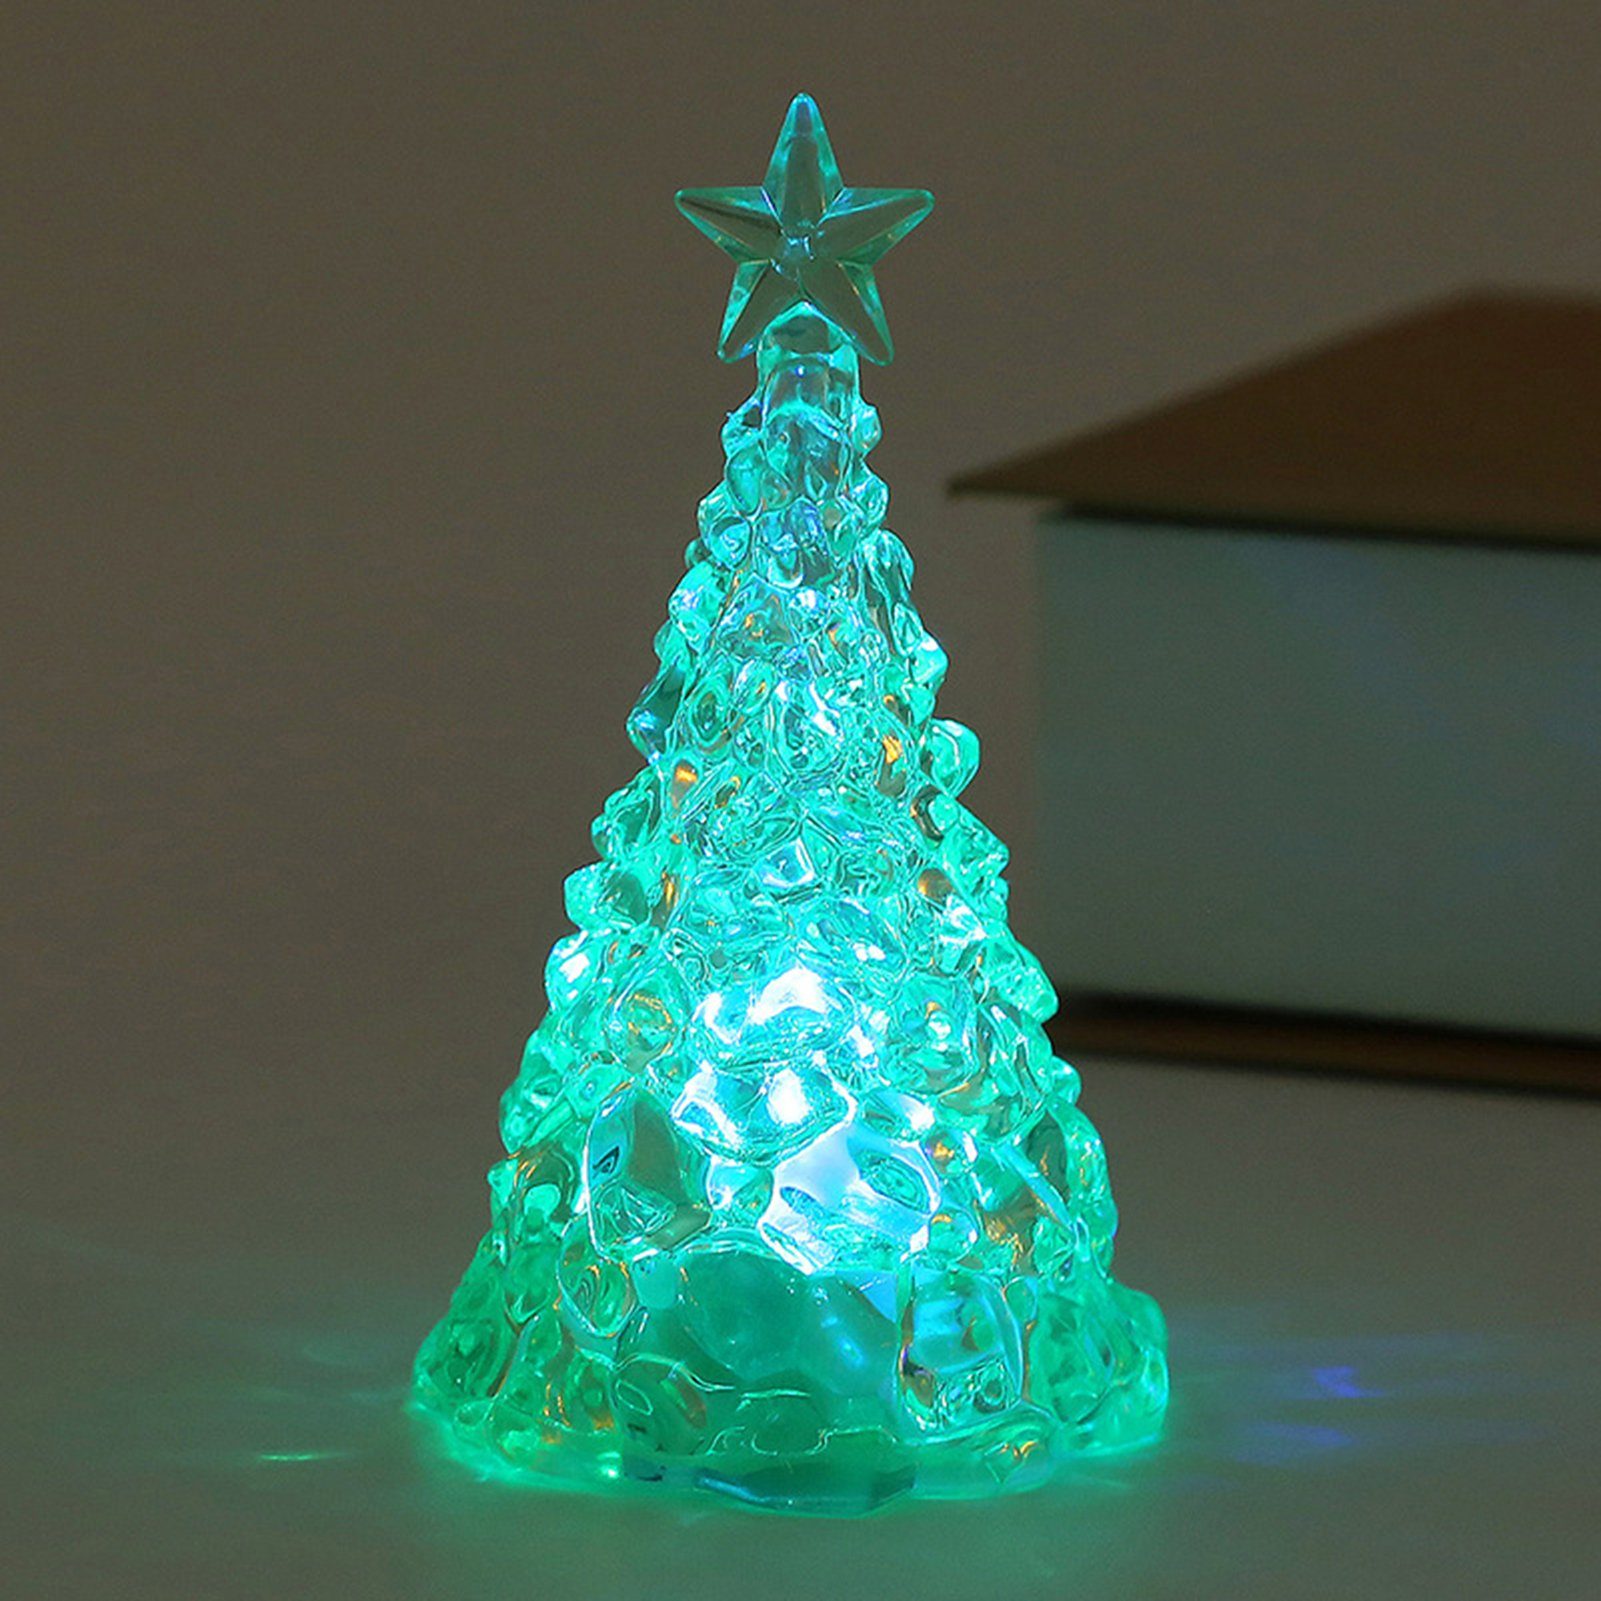 Rutaqian LED Nachtlicht 4 Stück Weihnachtsbaum Nachtlicht Heiligabend Geschenk LED Kerzenlicht, Weihnachtsdekorationen Desktop Ornament Kristall Nachtlicht Grün